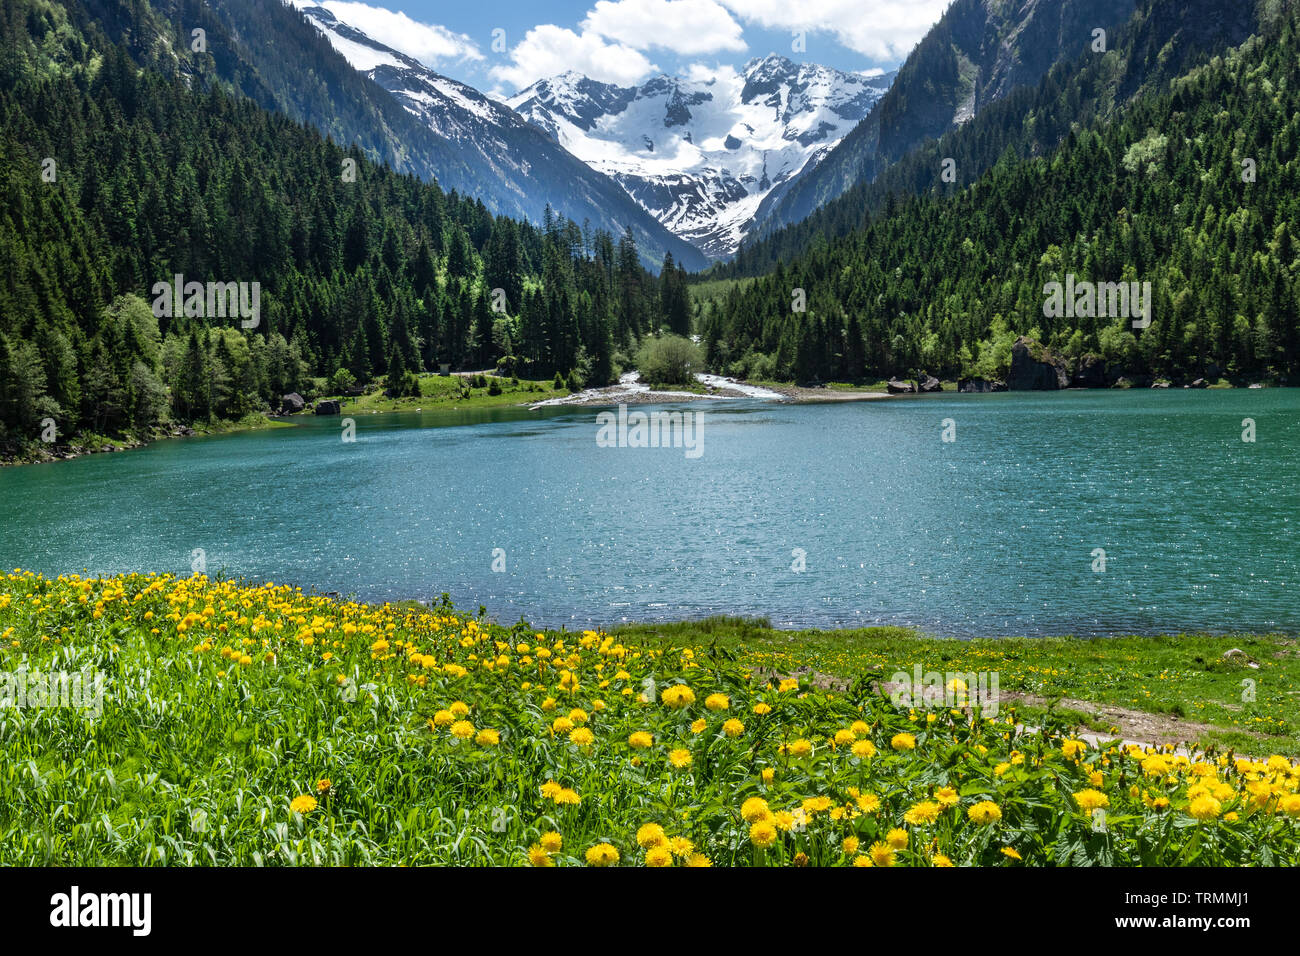 Amazing alpine Landschaft mit grünen Bergsee, gelbe Blumen und schneebedeckten Gipfel im Hintergrund. Österreich, Tirol, See, Stillup Stillup Behälter Stockfoto